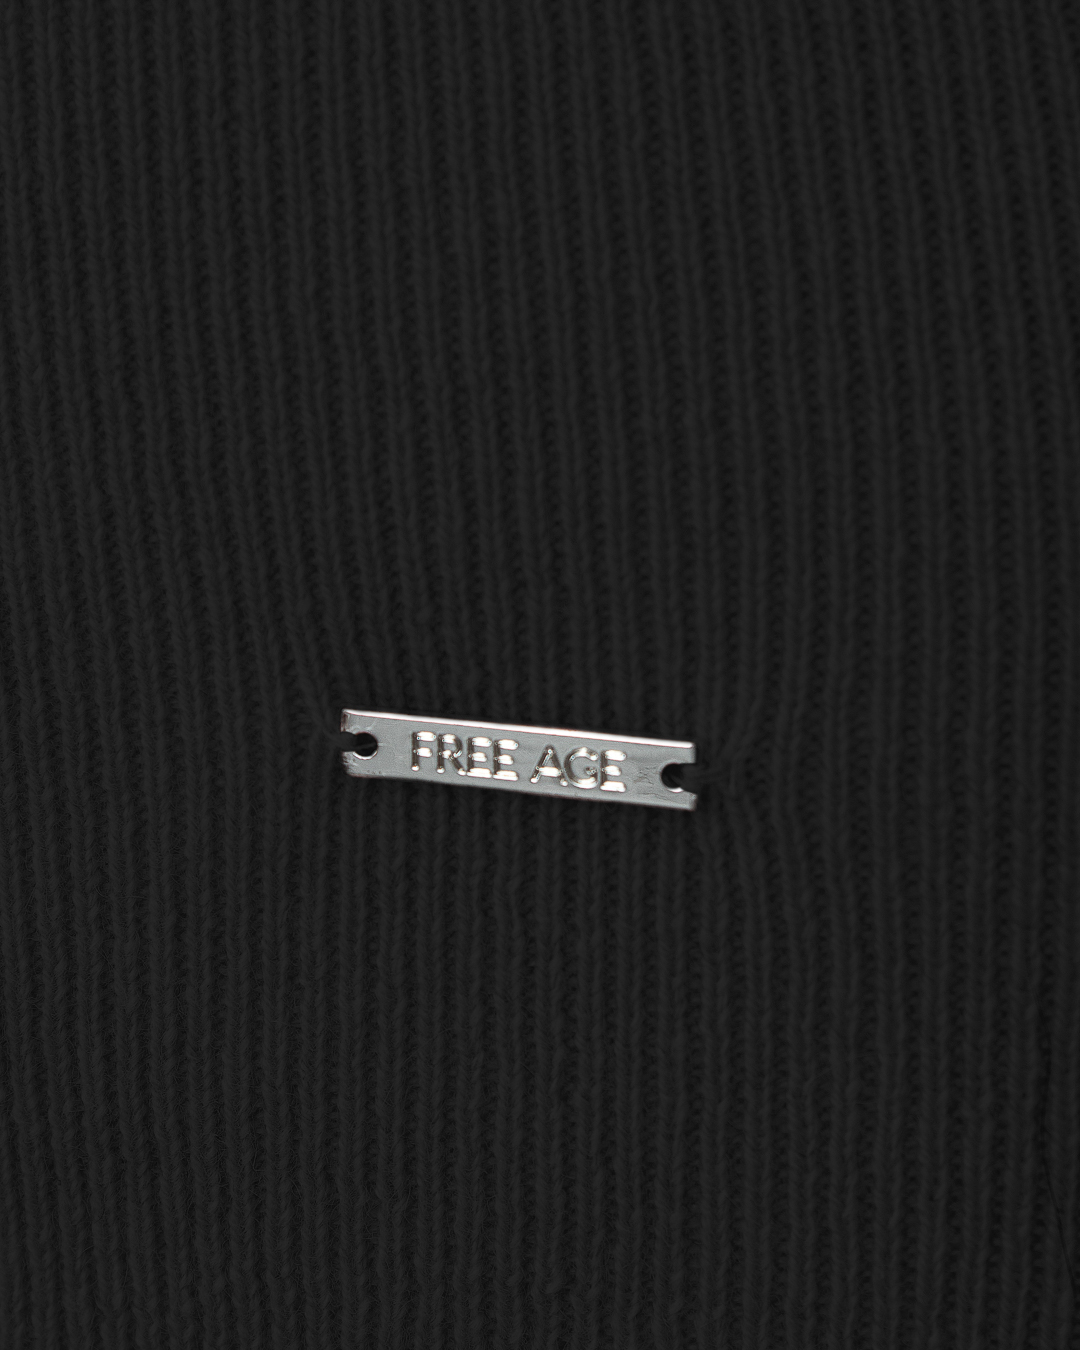 джемпер FREE AGE. FW20082-B черный m, размер m - фото 2